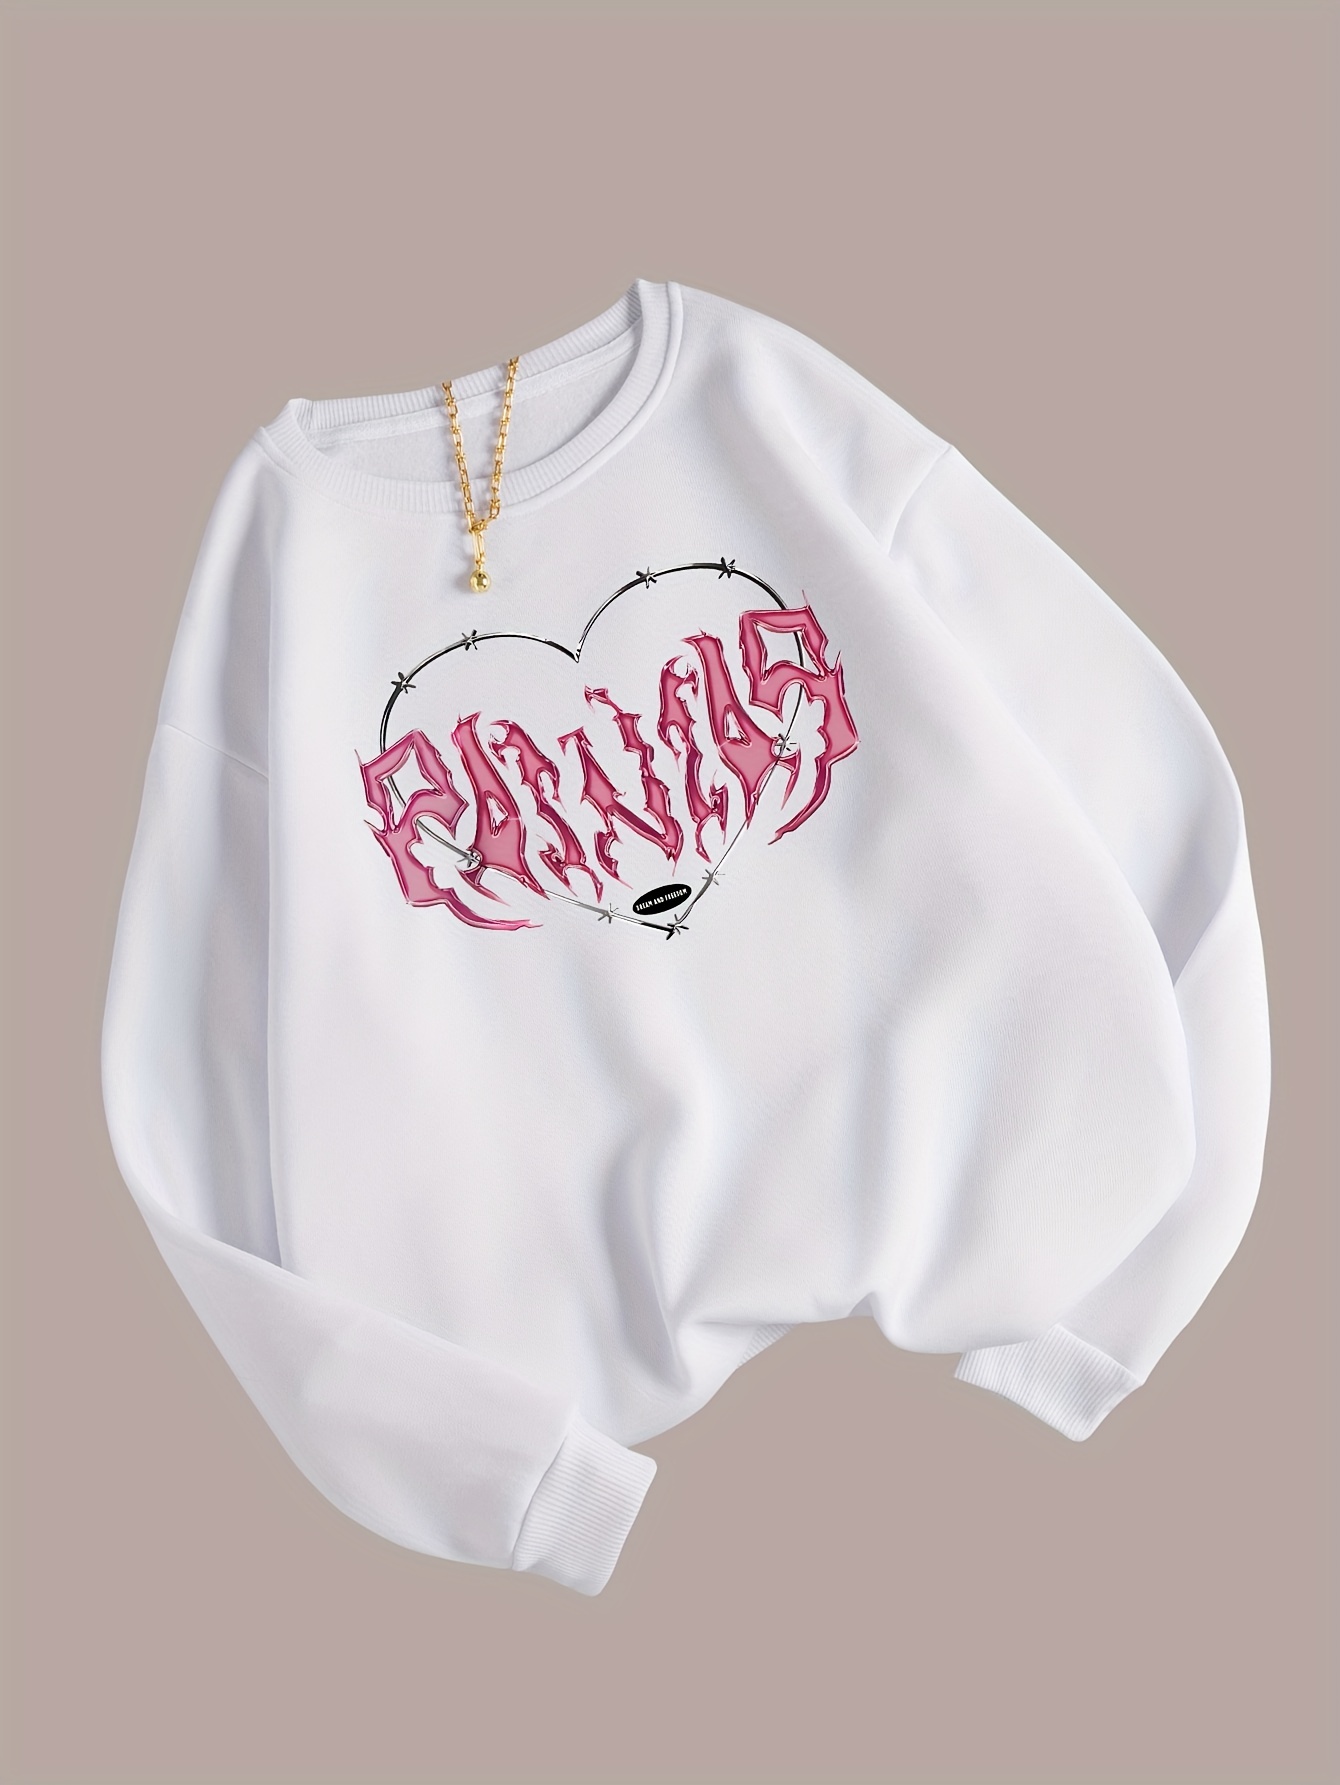 Victoria's Secret Pink Crew Neck Pullover Sweatshirt